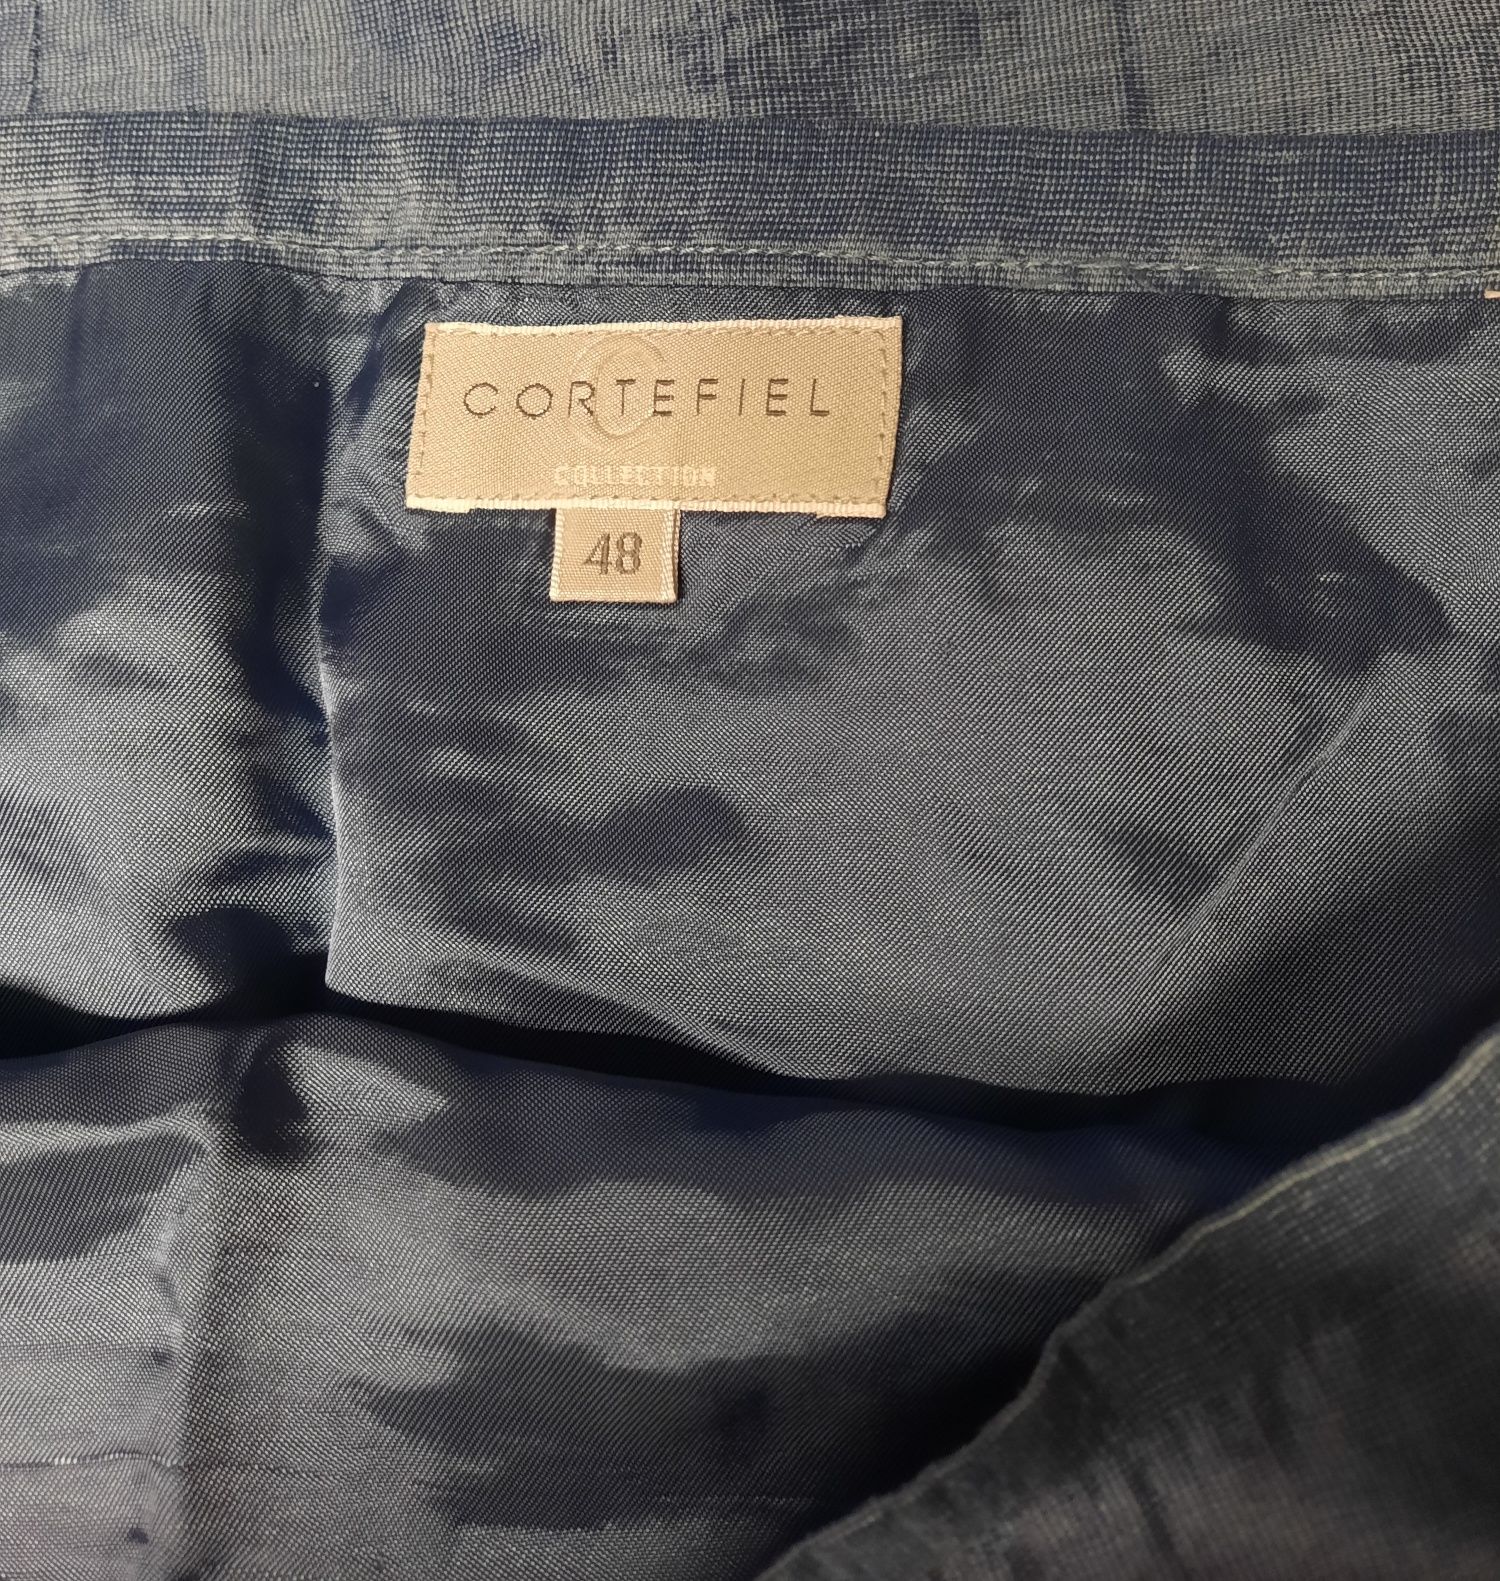 Saia e casaco da Cortefiel